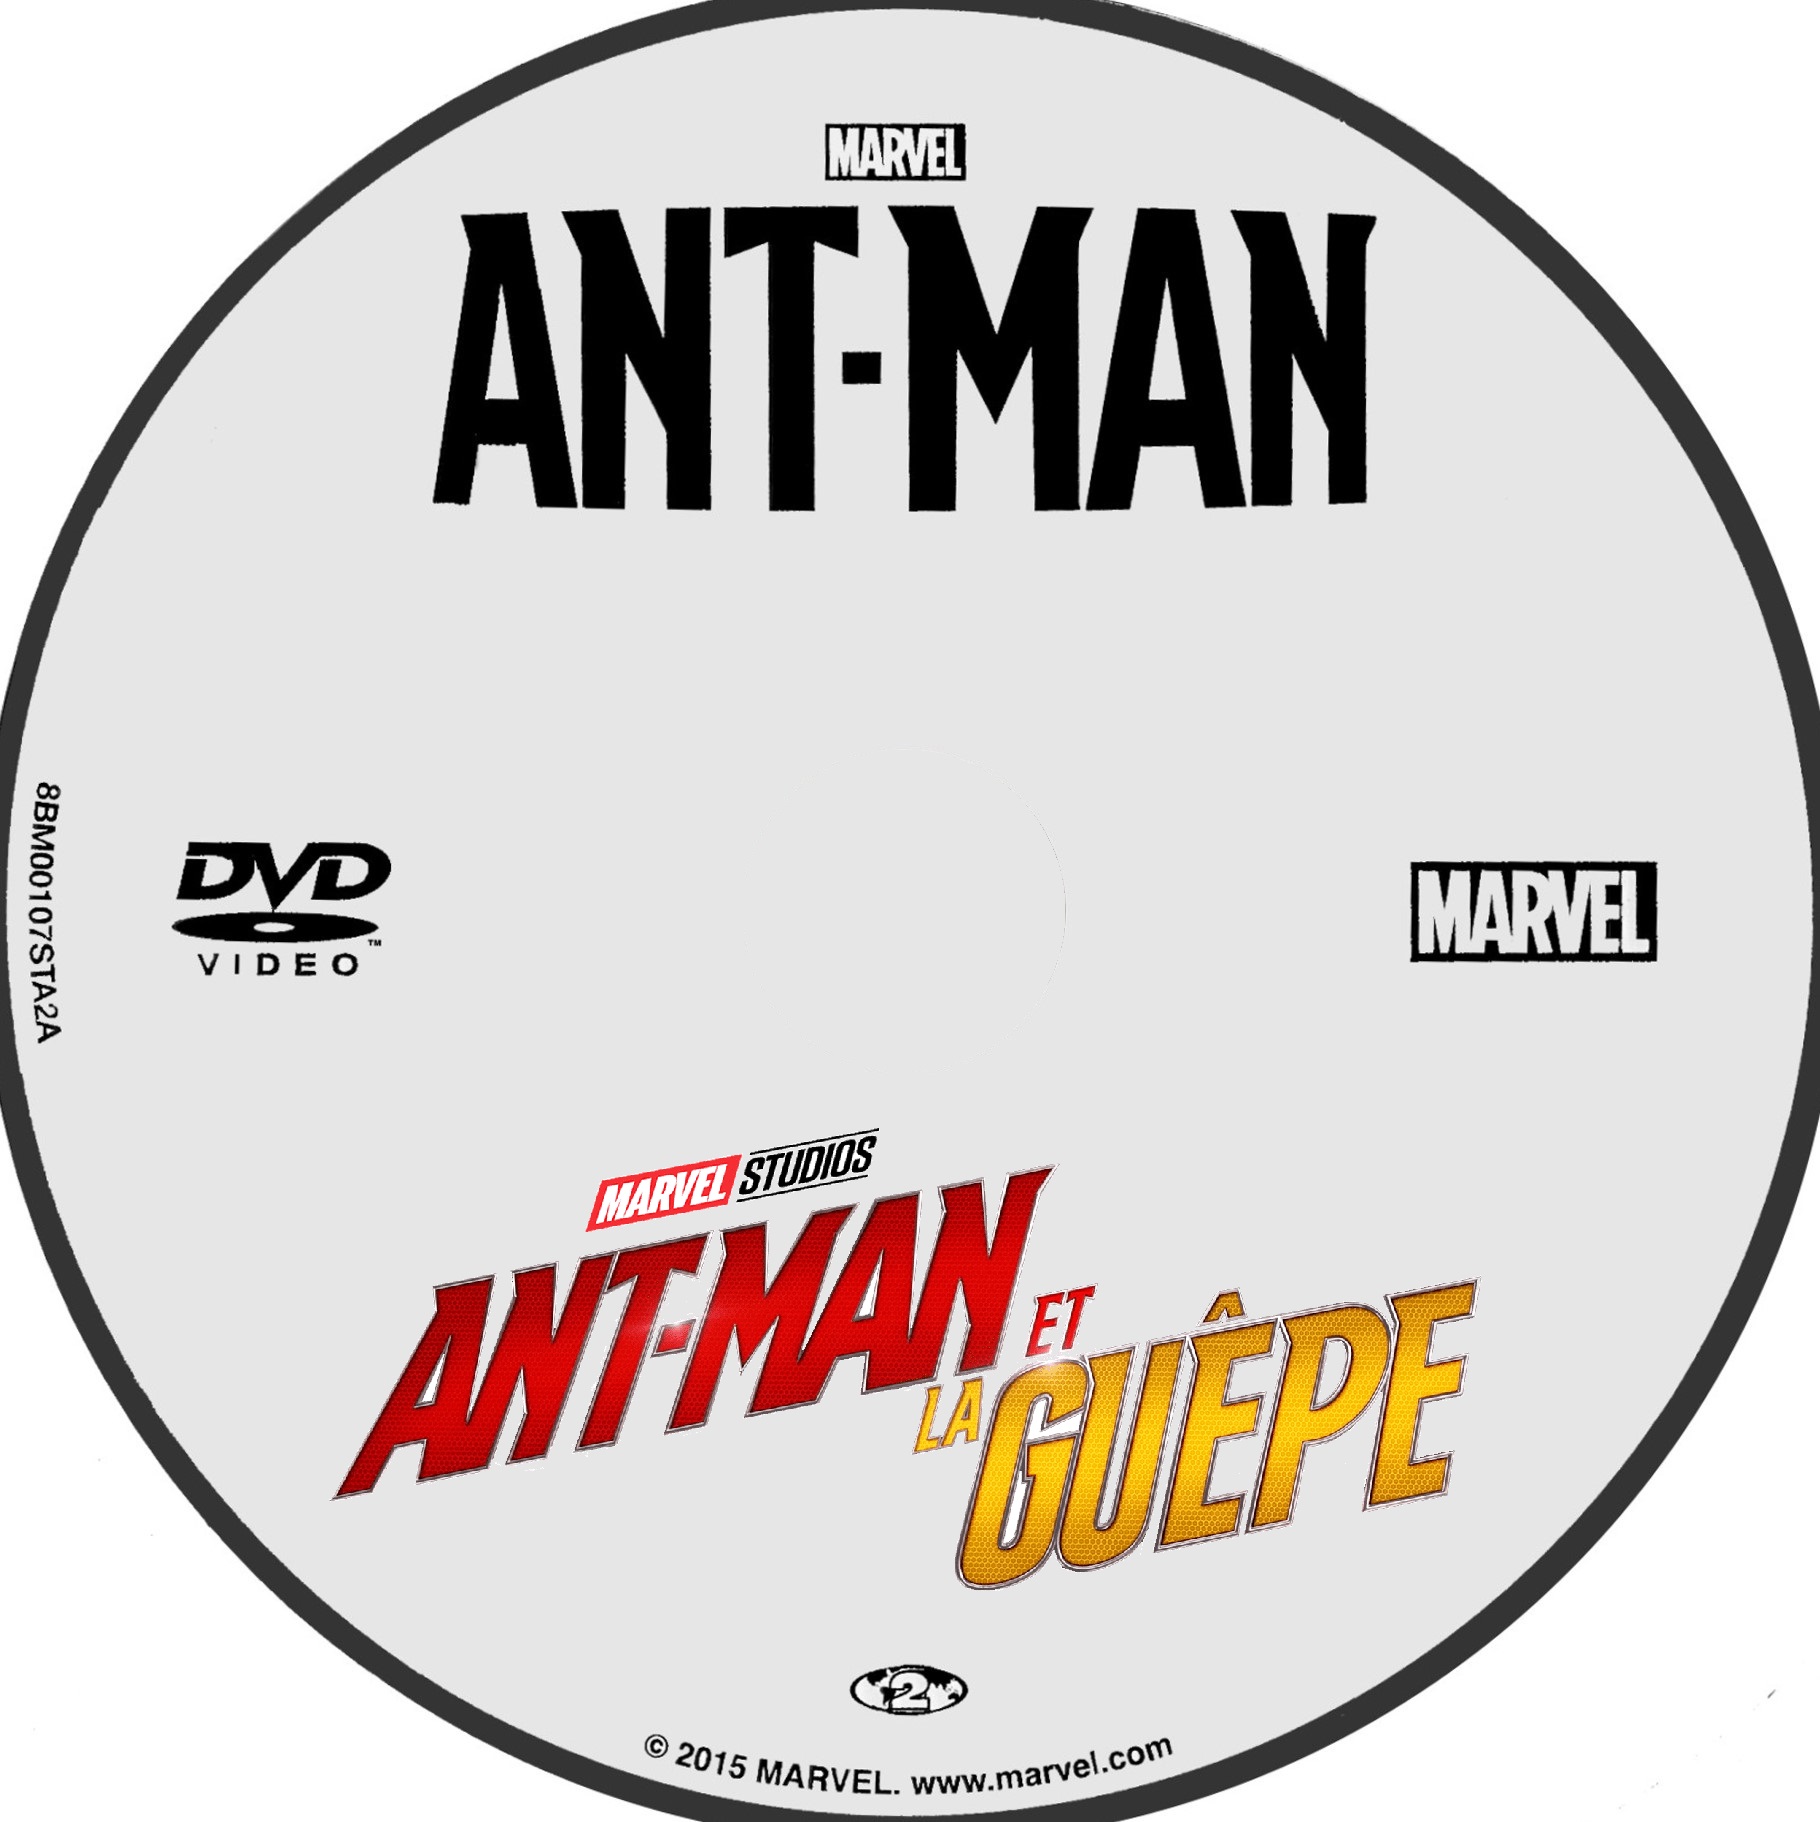 Ant Man+Ant Man et la Guepe custom